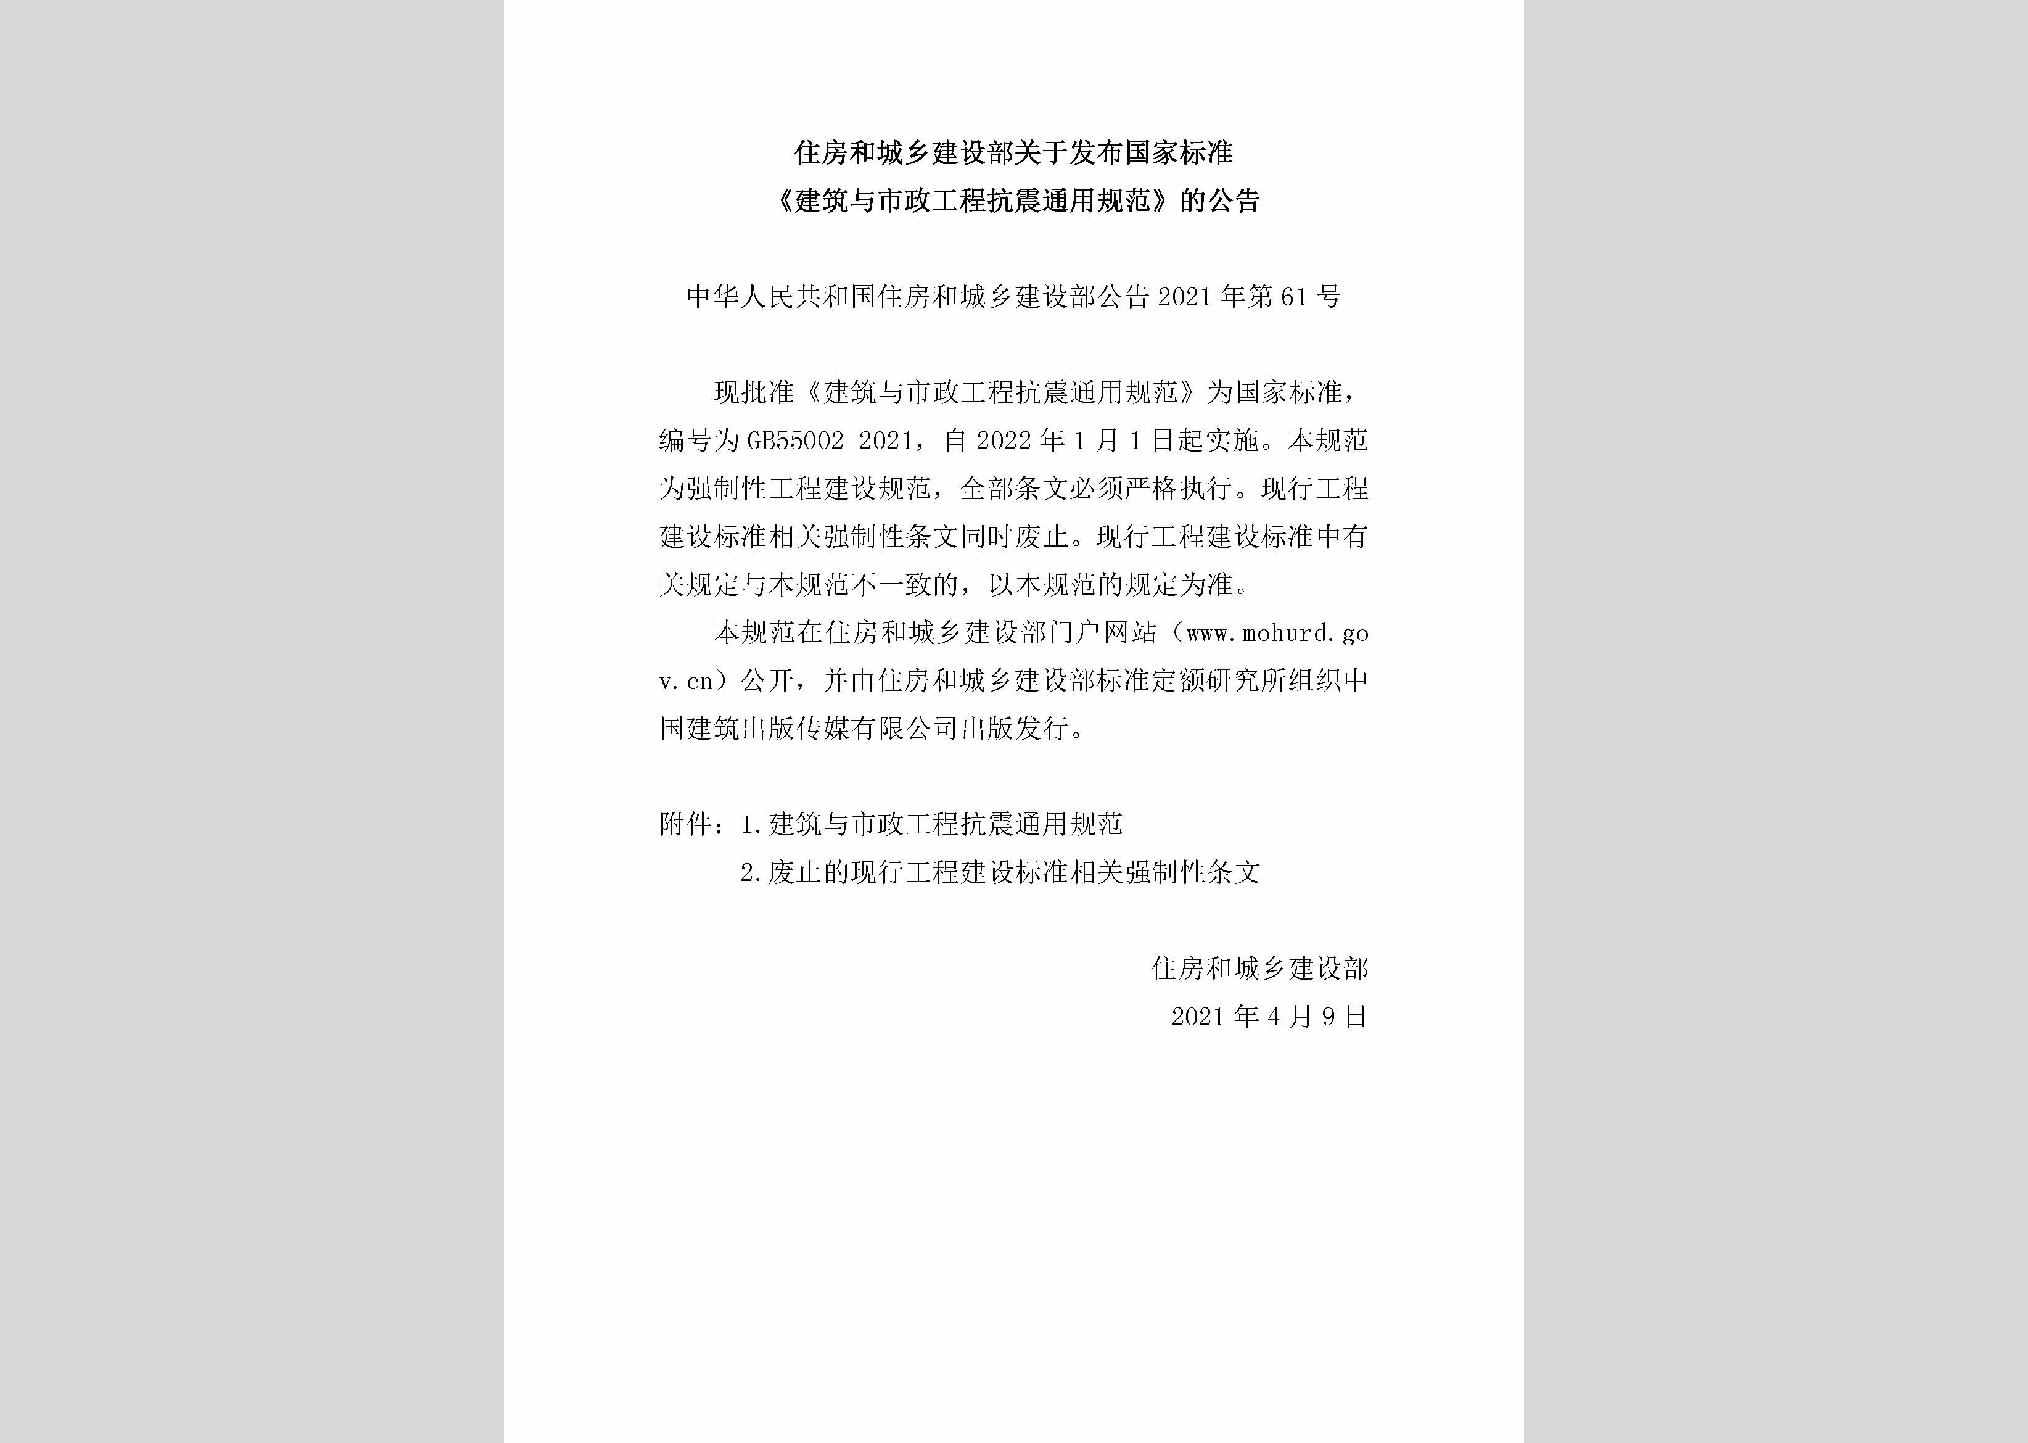 中华人民共和国住房和城乡建设部公告2021年第61号：住房和城乡建设部关于发布国家标准《建筑与市政工程抗震通用规范》的公告